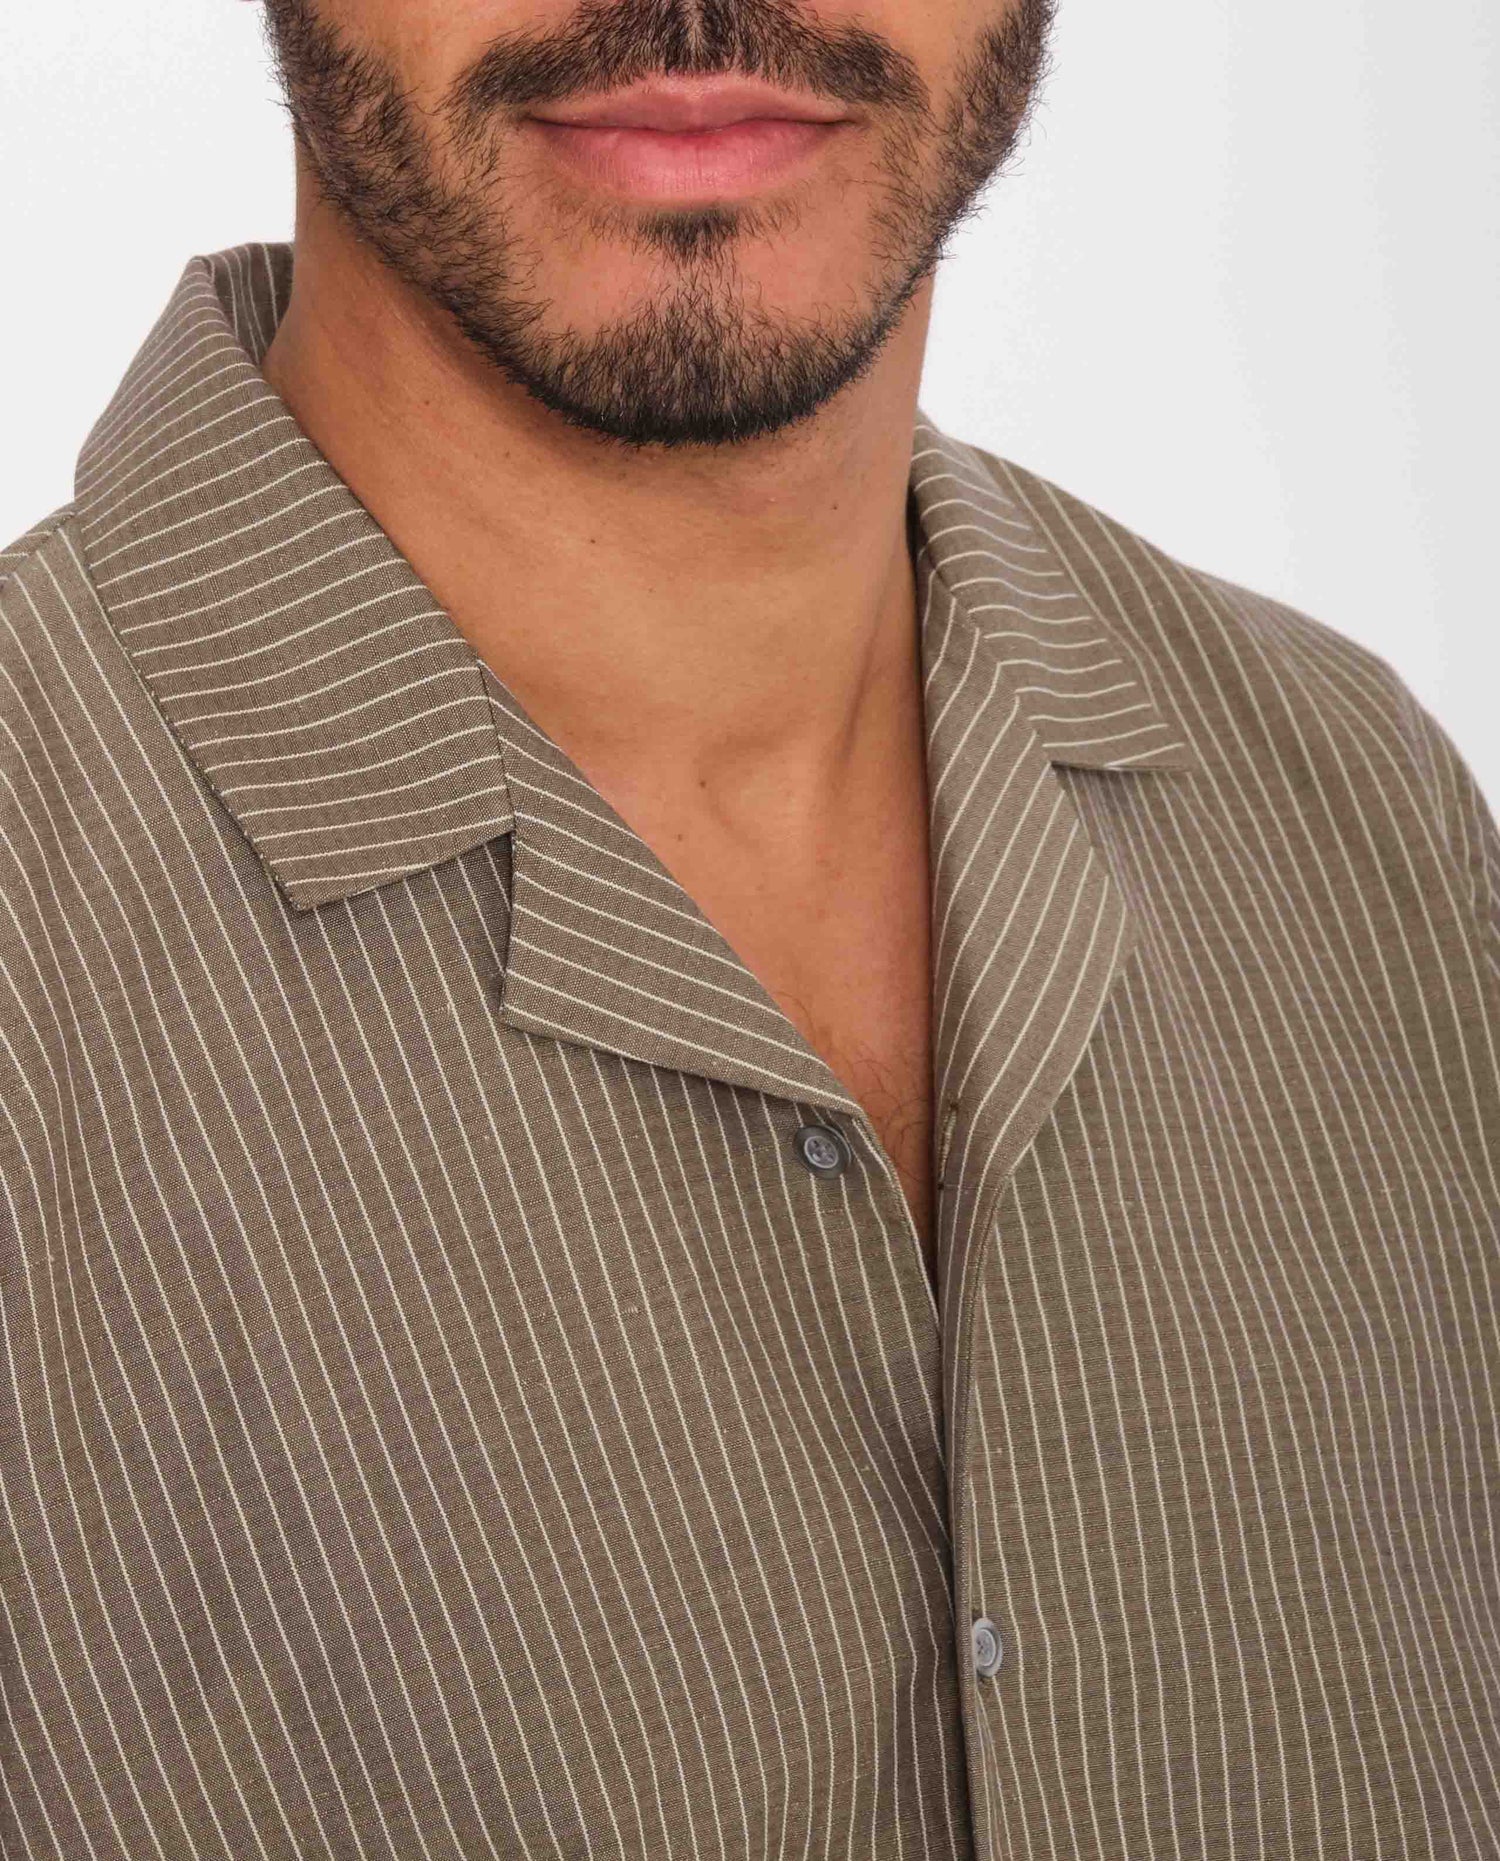 marché commun noyoco homme chemise manches courtes rayée gris taupe